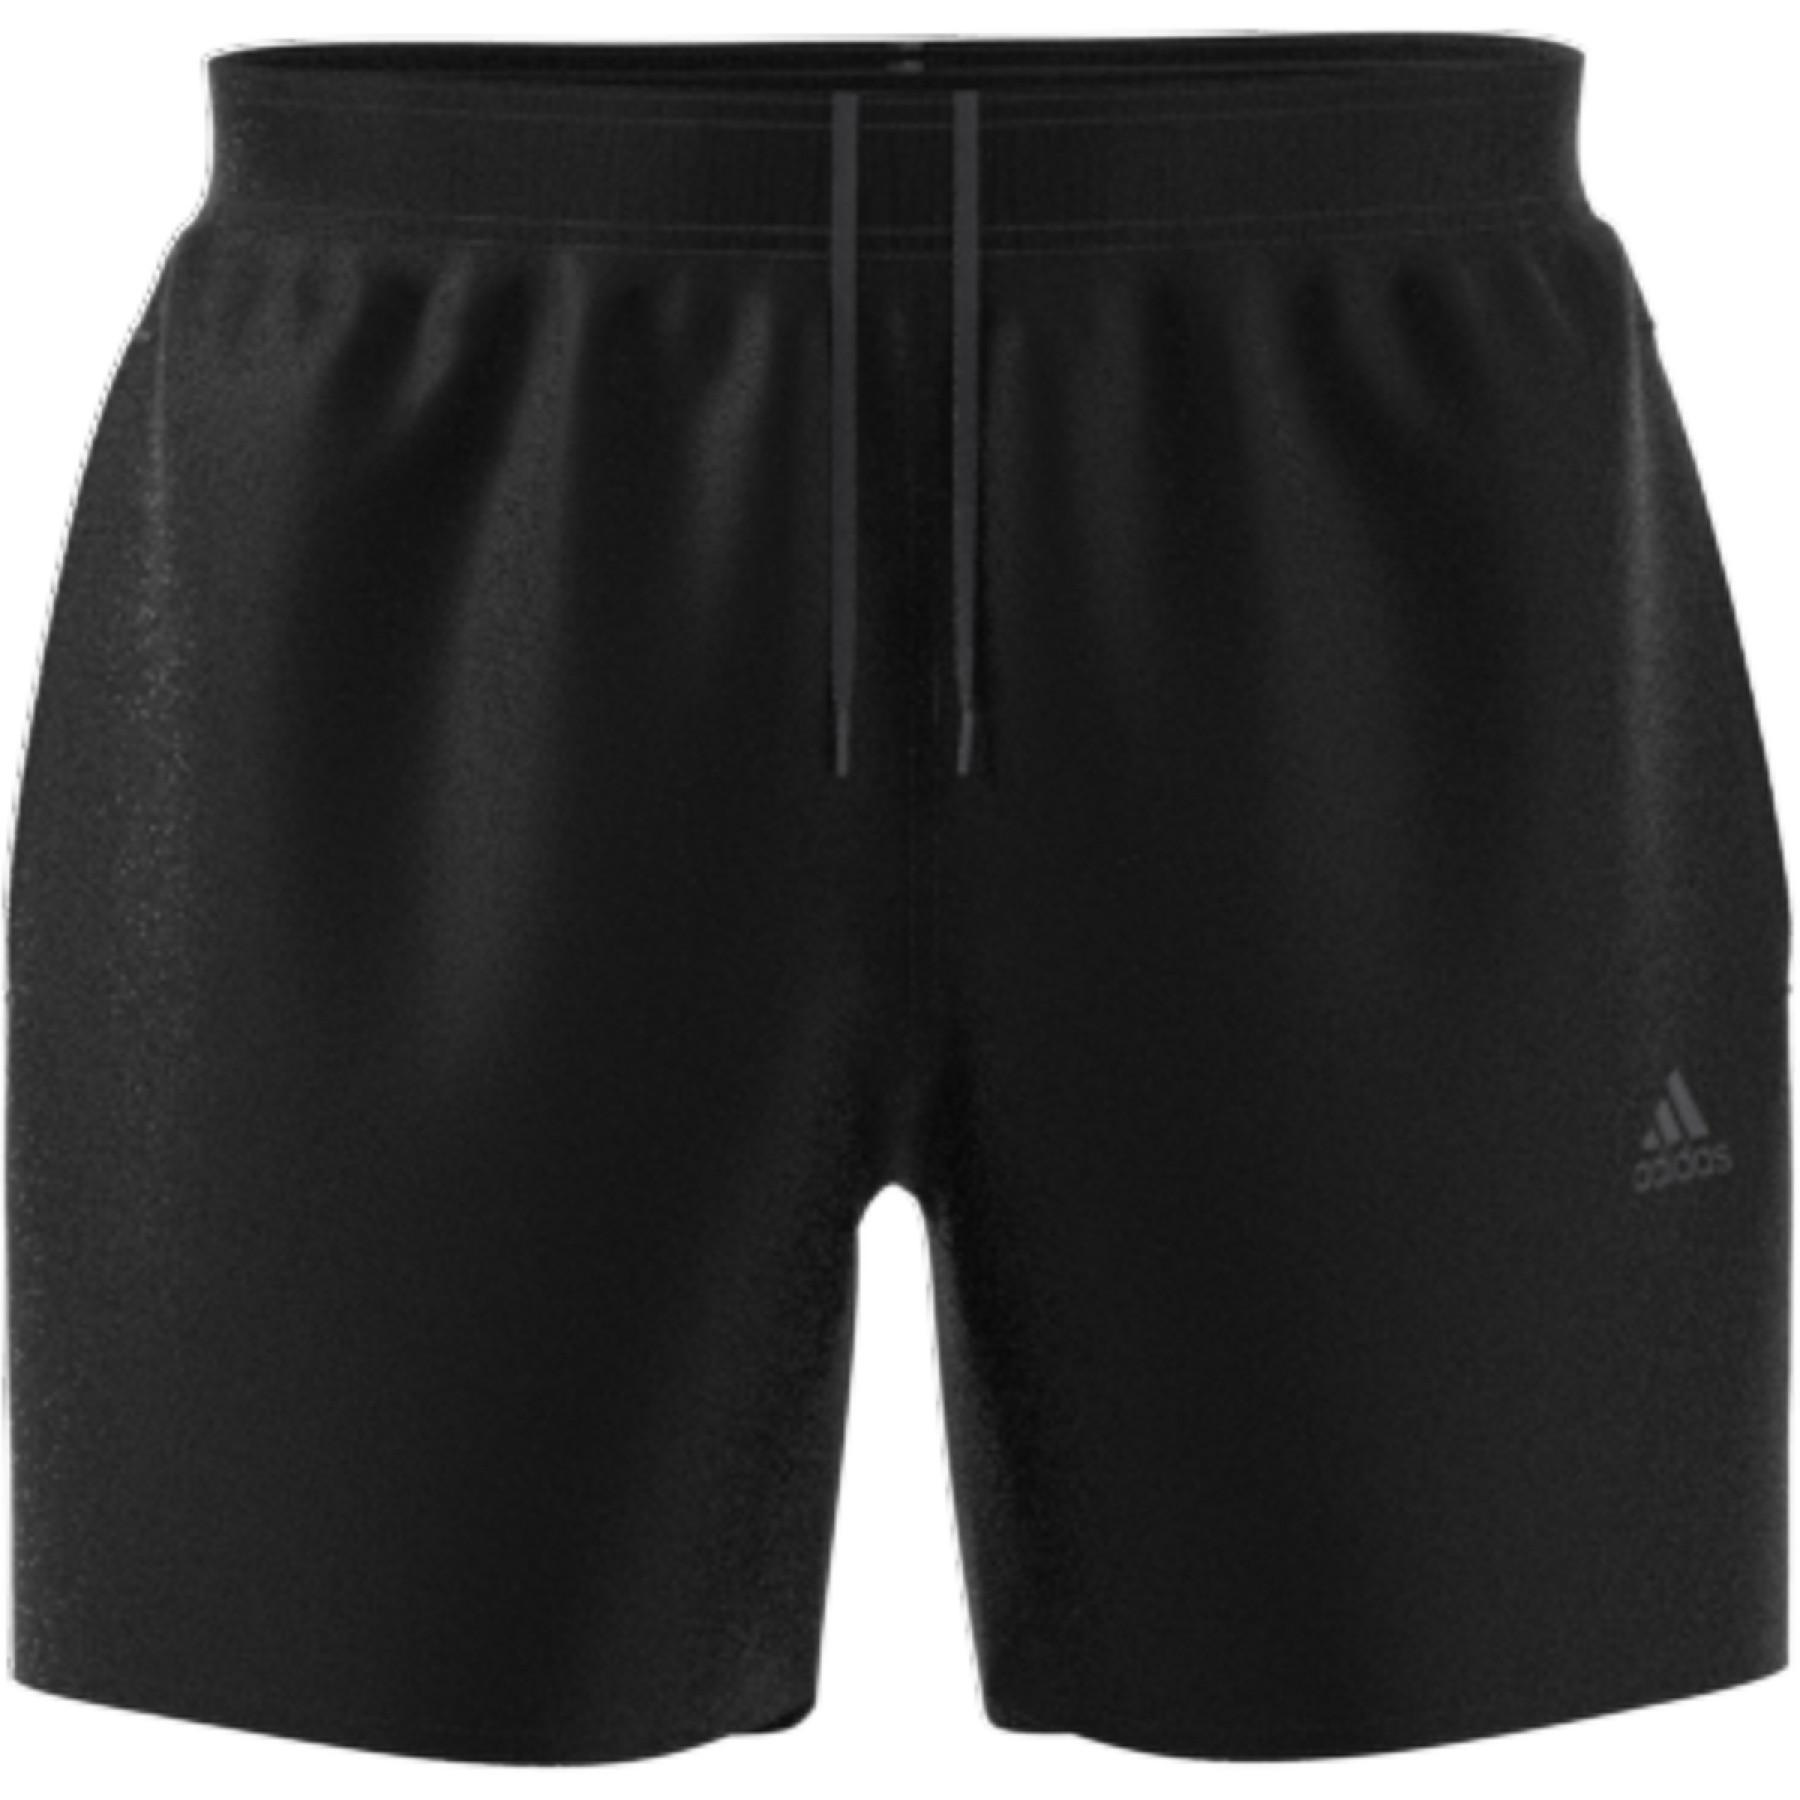 Pantalones cortos de natación adidas Length Colorblock 3-Bandes